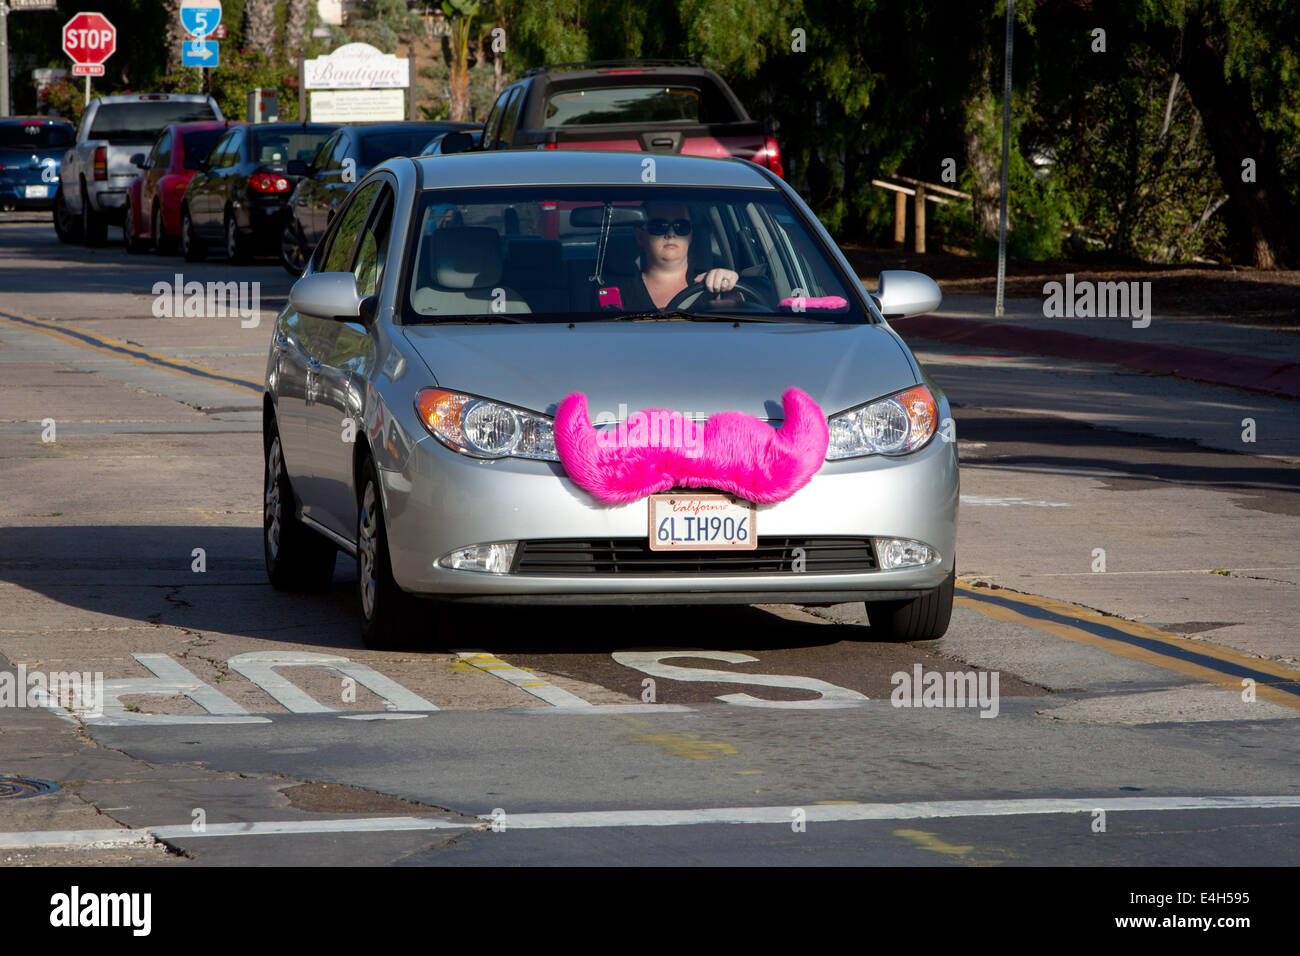 Una donna è alla guida di una vettura per la società rideshare Lyft con una finta jumbo baffi rosa che si aggancia alla griglia della vettura, nel giugno 2014. Lyft è detto di essere il 30% più conveniente di cabine. Foto Stock